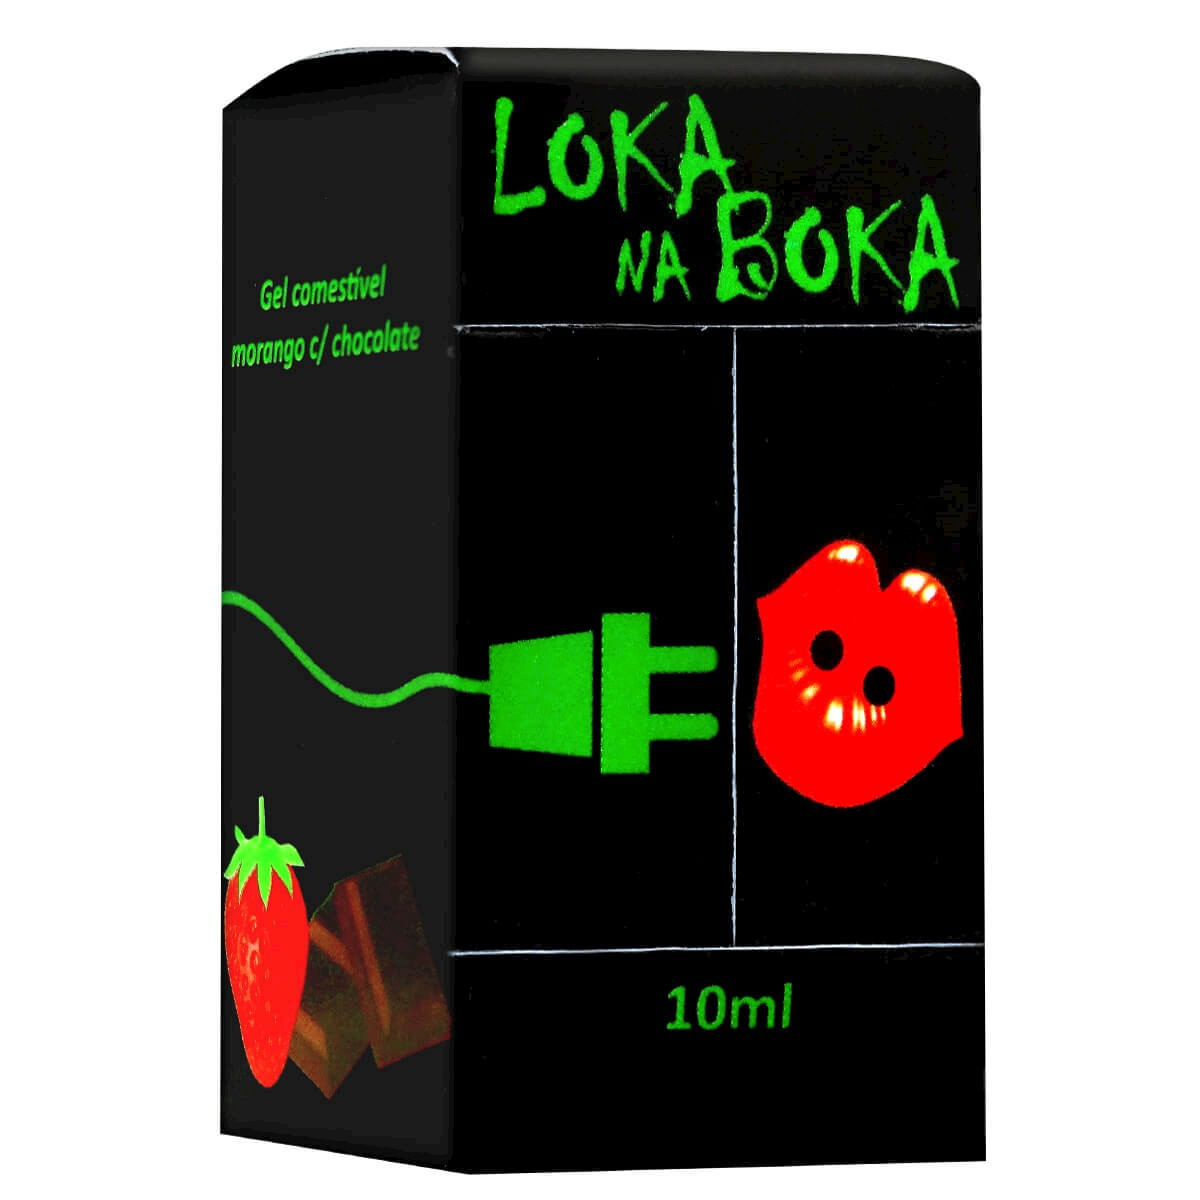 Loka na Boka Gel Comestível Eletrizante 10ml Loka Sensação